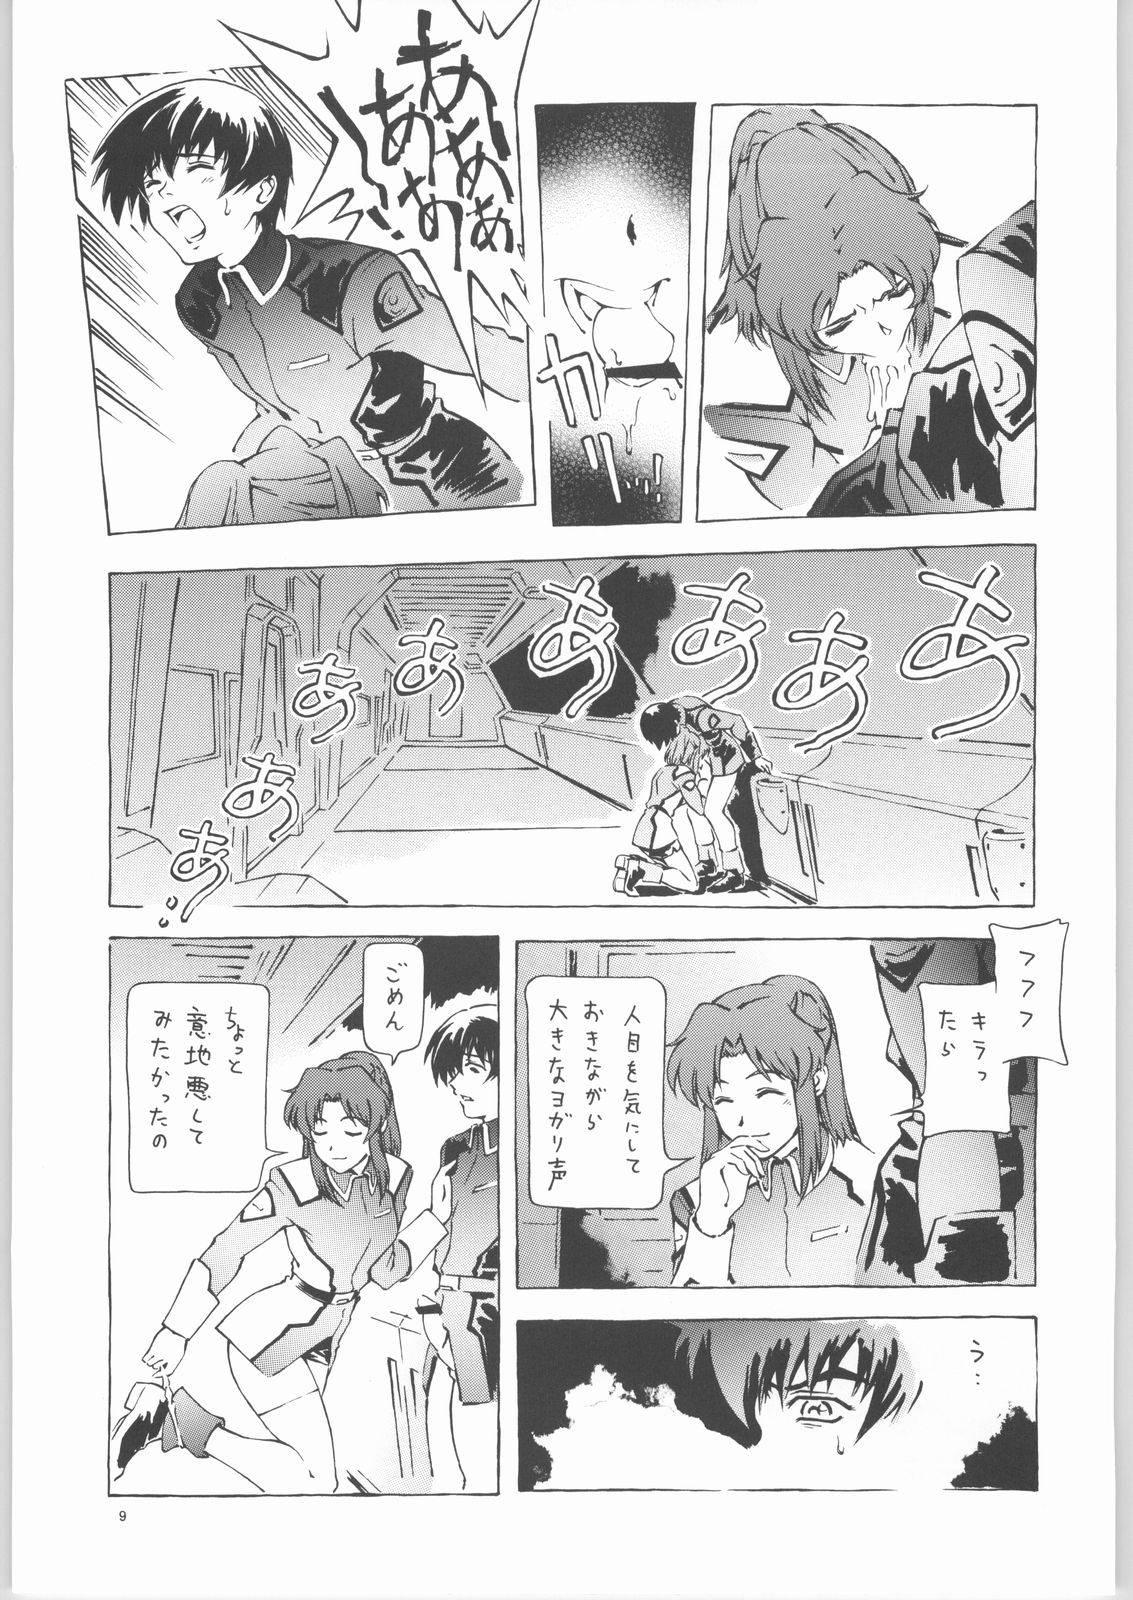 Porra Kekkan Dam Dam A - Gundam seed Flaca - Page 8